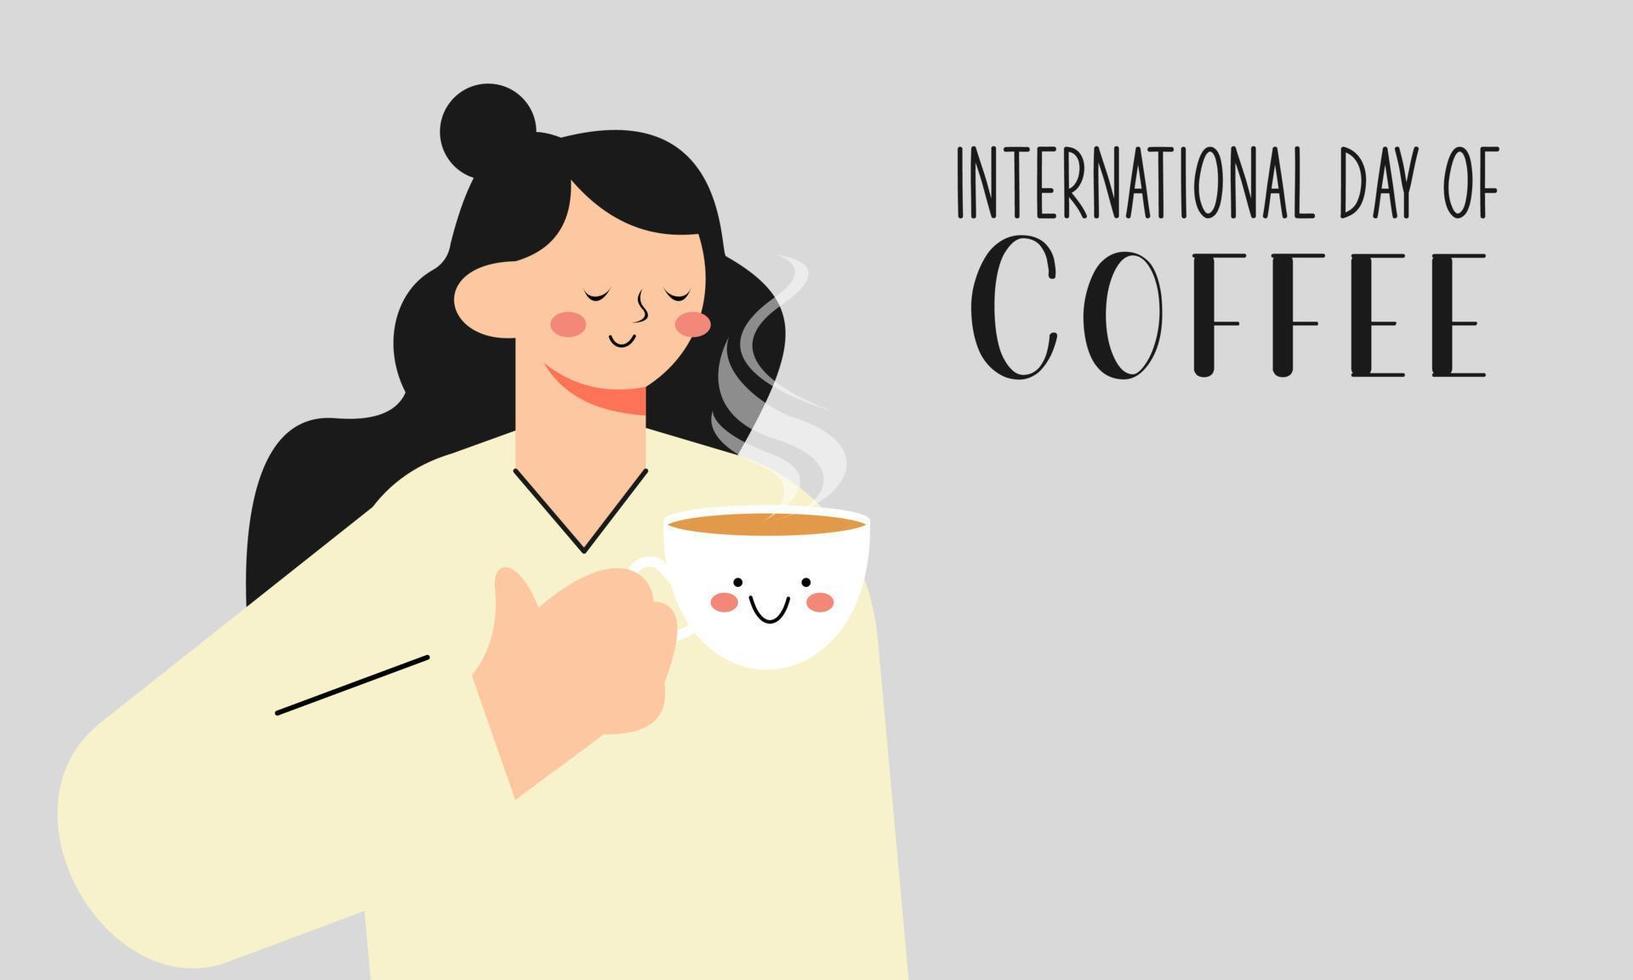 internazionale giorno di caffè illustrazione mano disegnato vettore